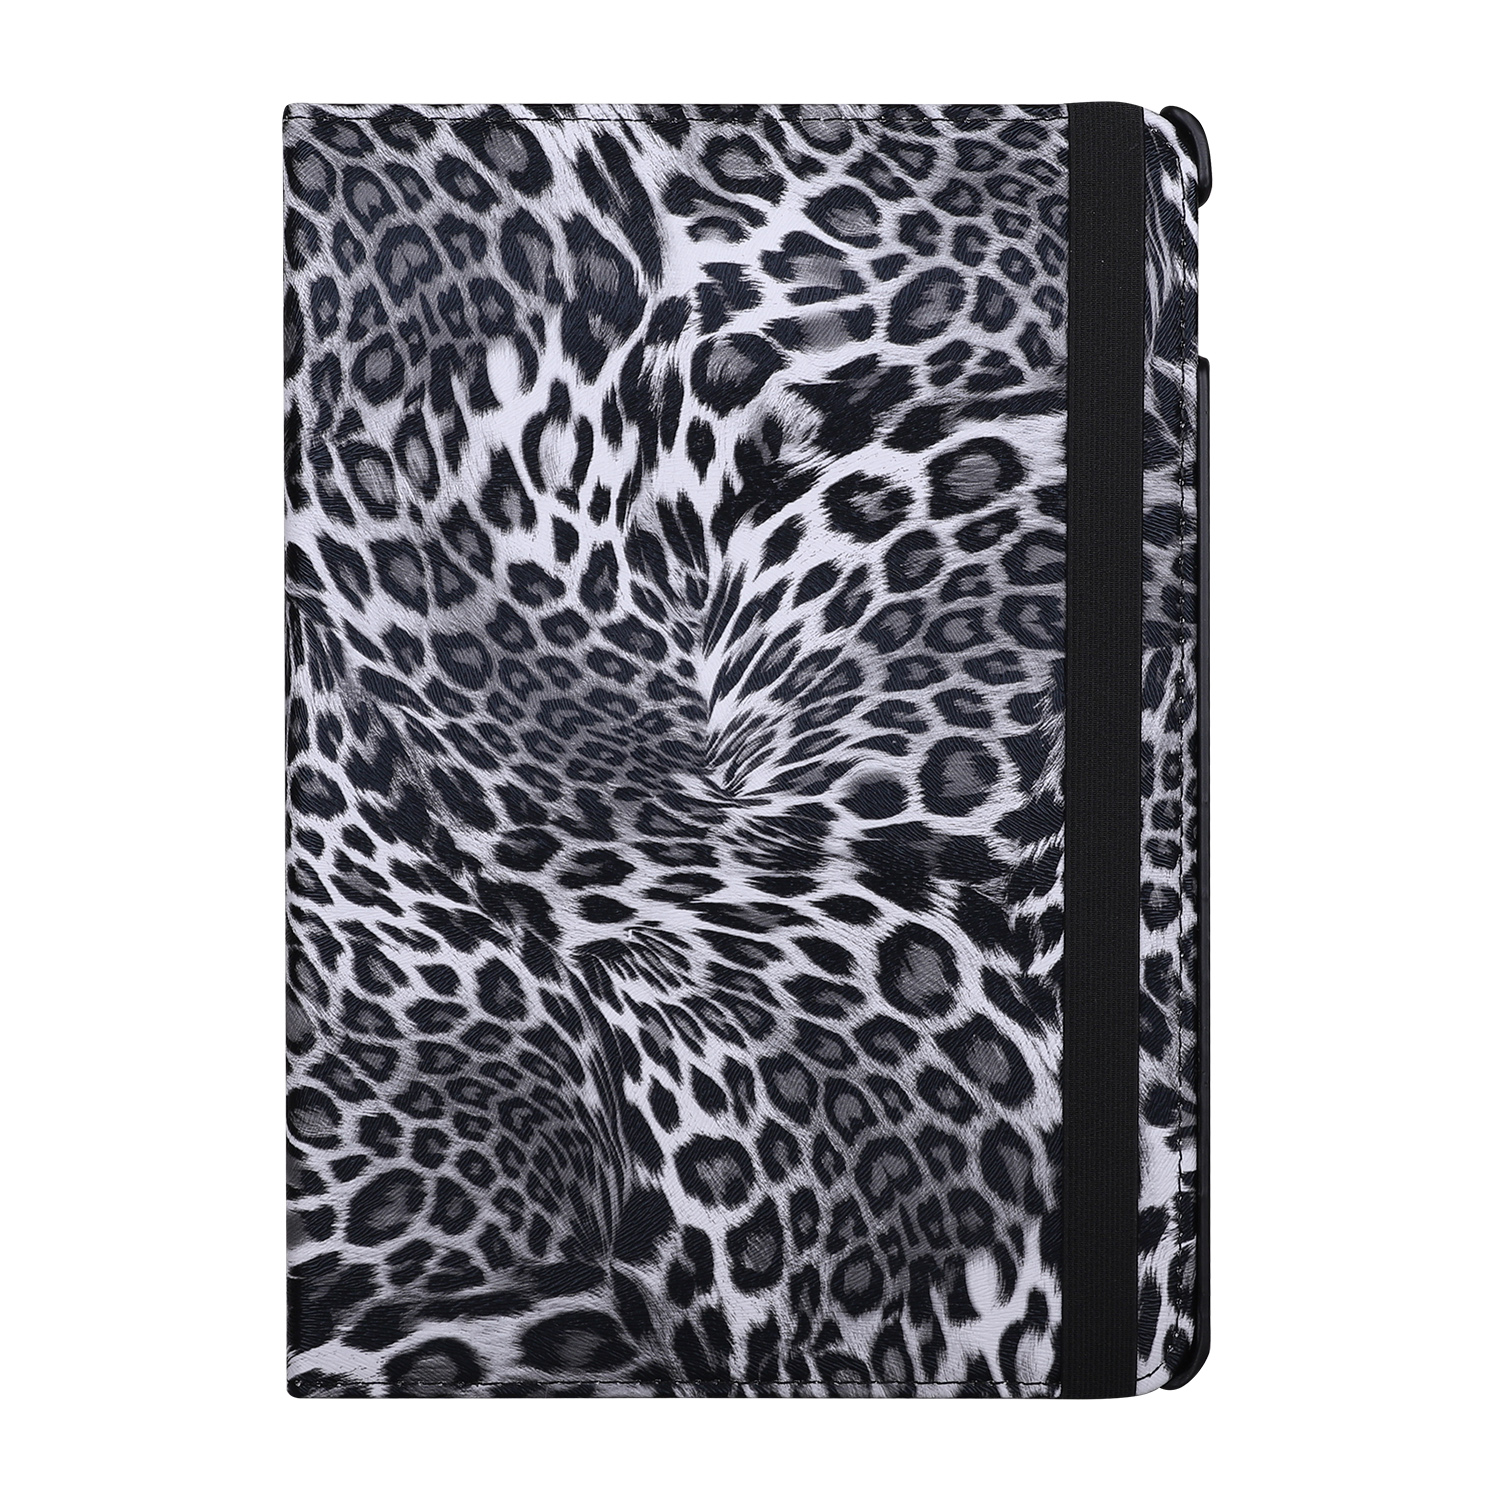 Leopard fodral, iPad 10.2 / Pro 10.5 / Air 3, grå